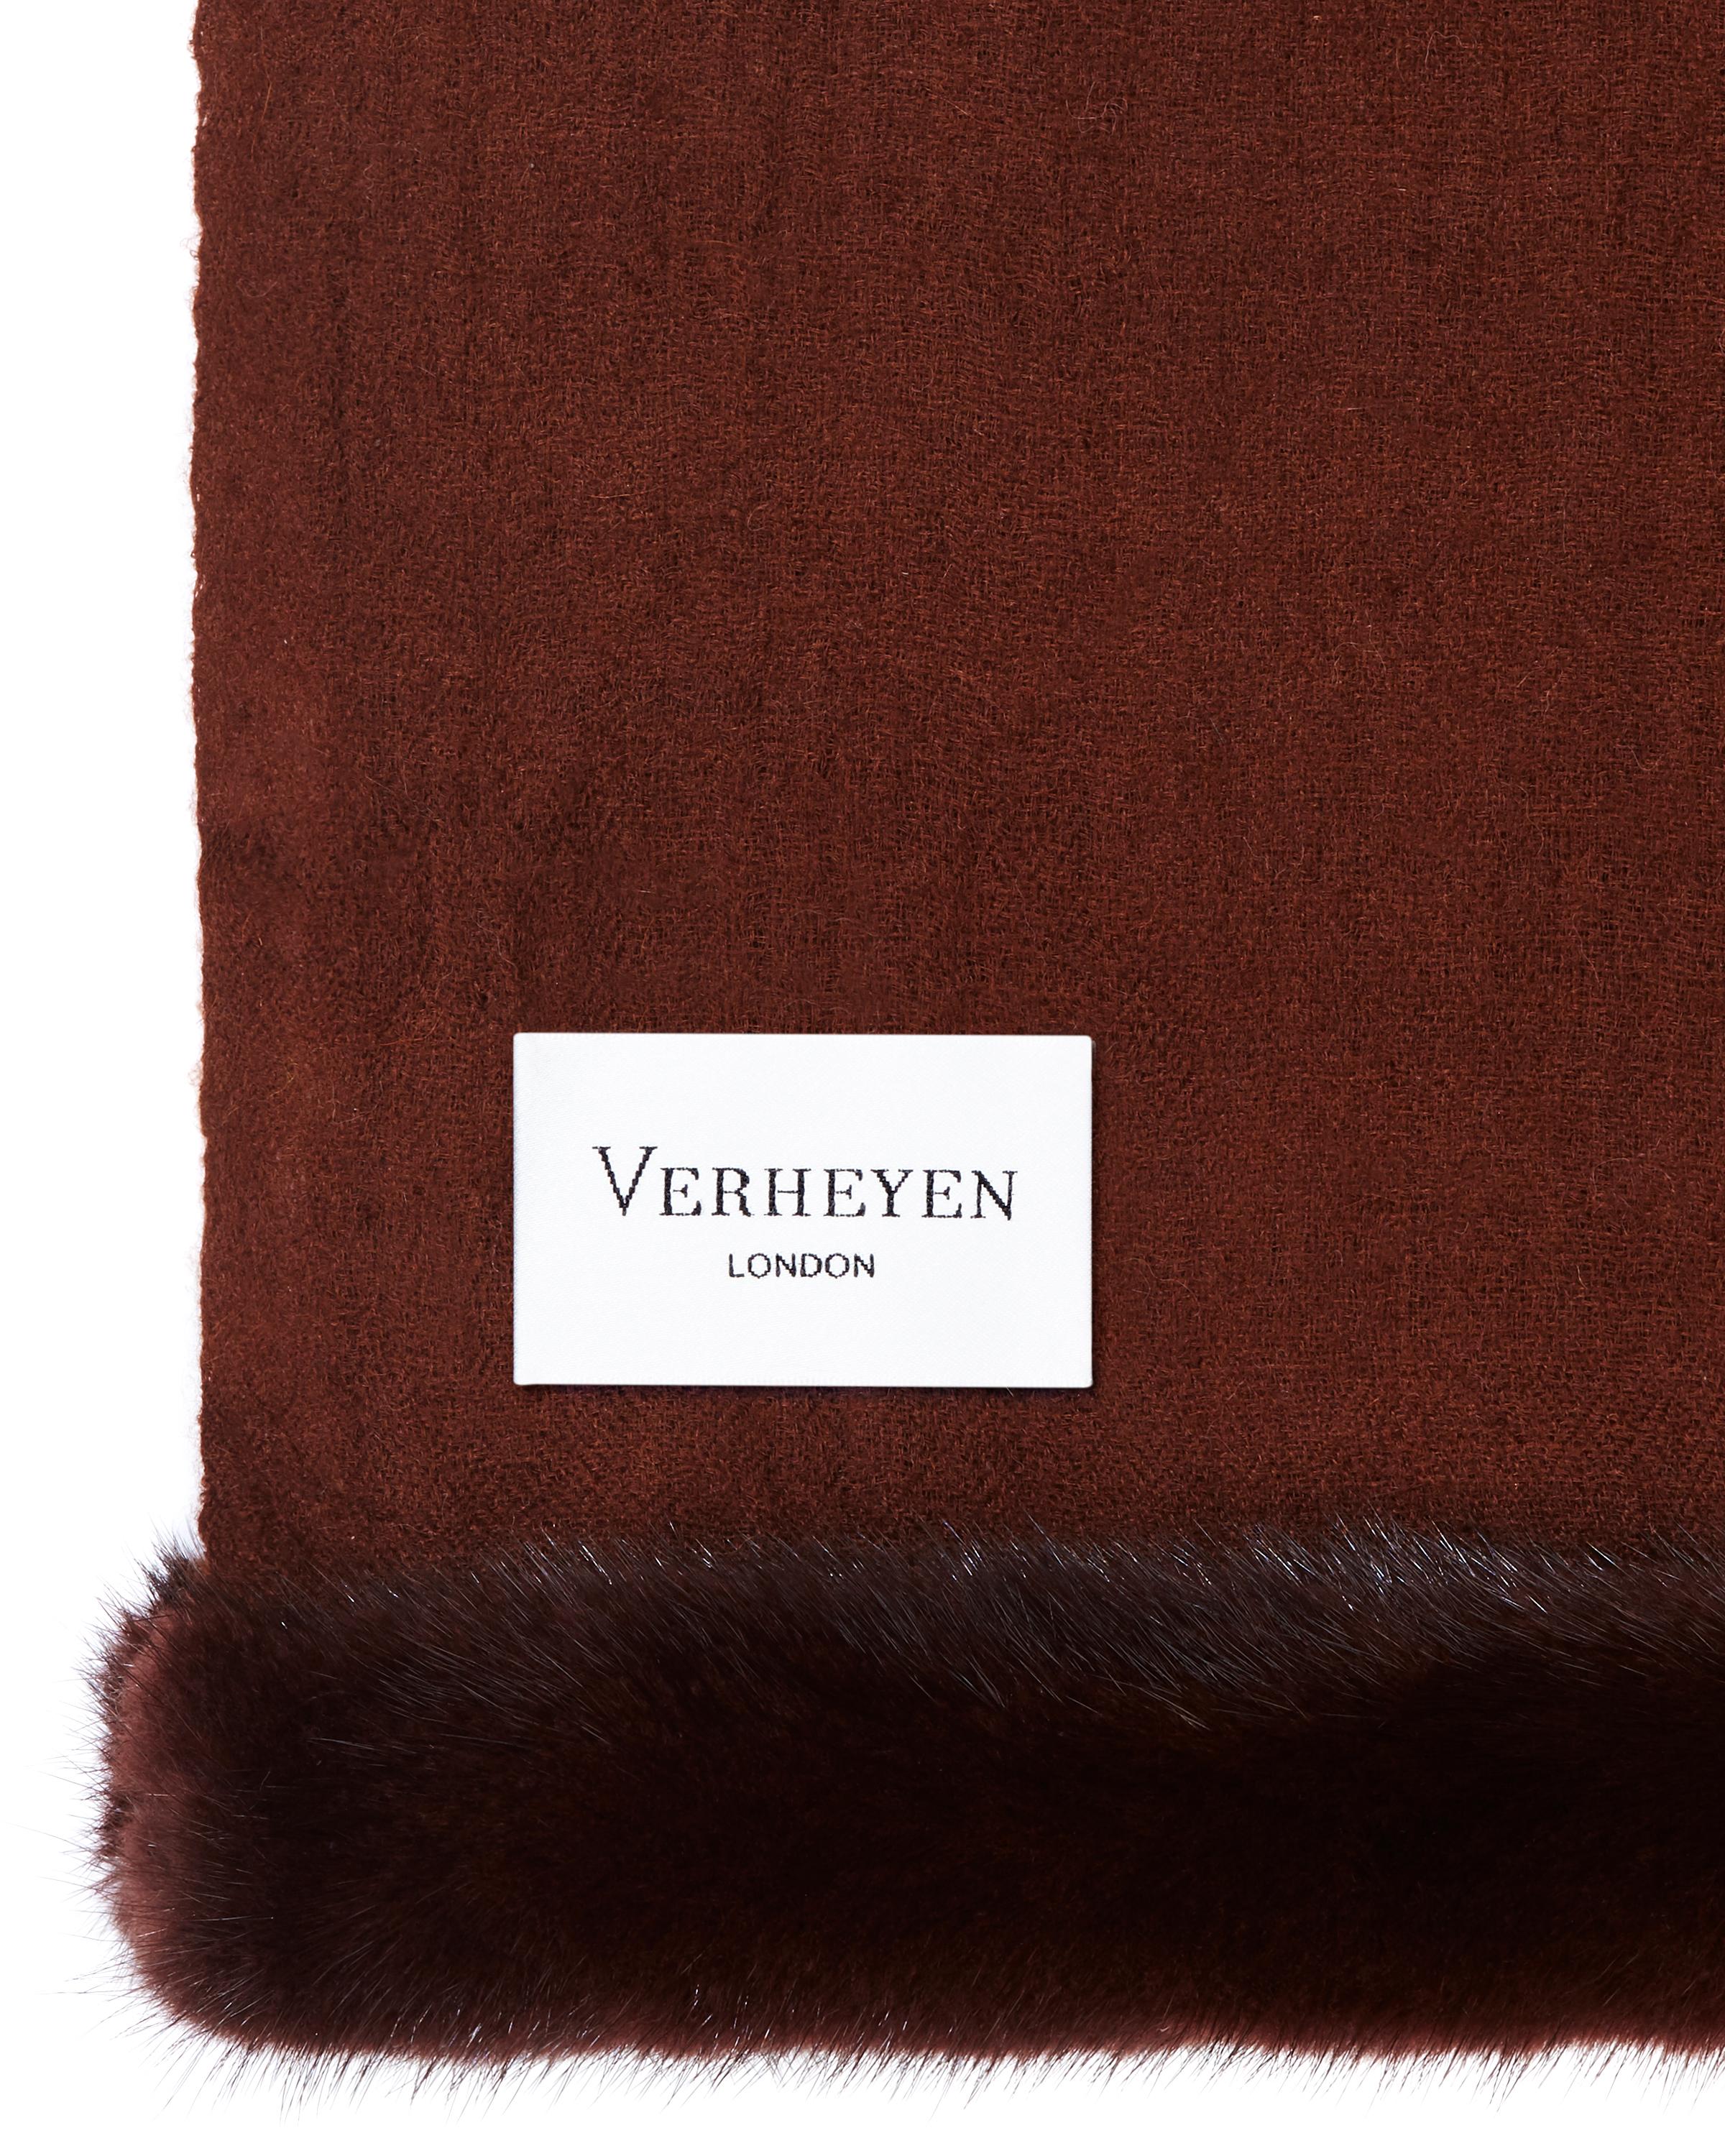 Verheyen London Handwoven Mink Fur Trimmed Cashmere Scarf in Brown - Brand New 1